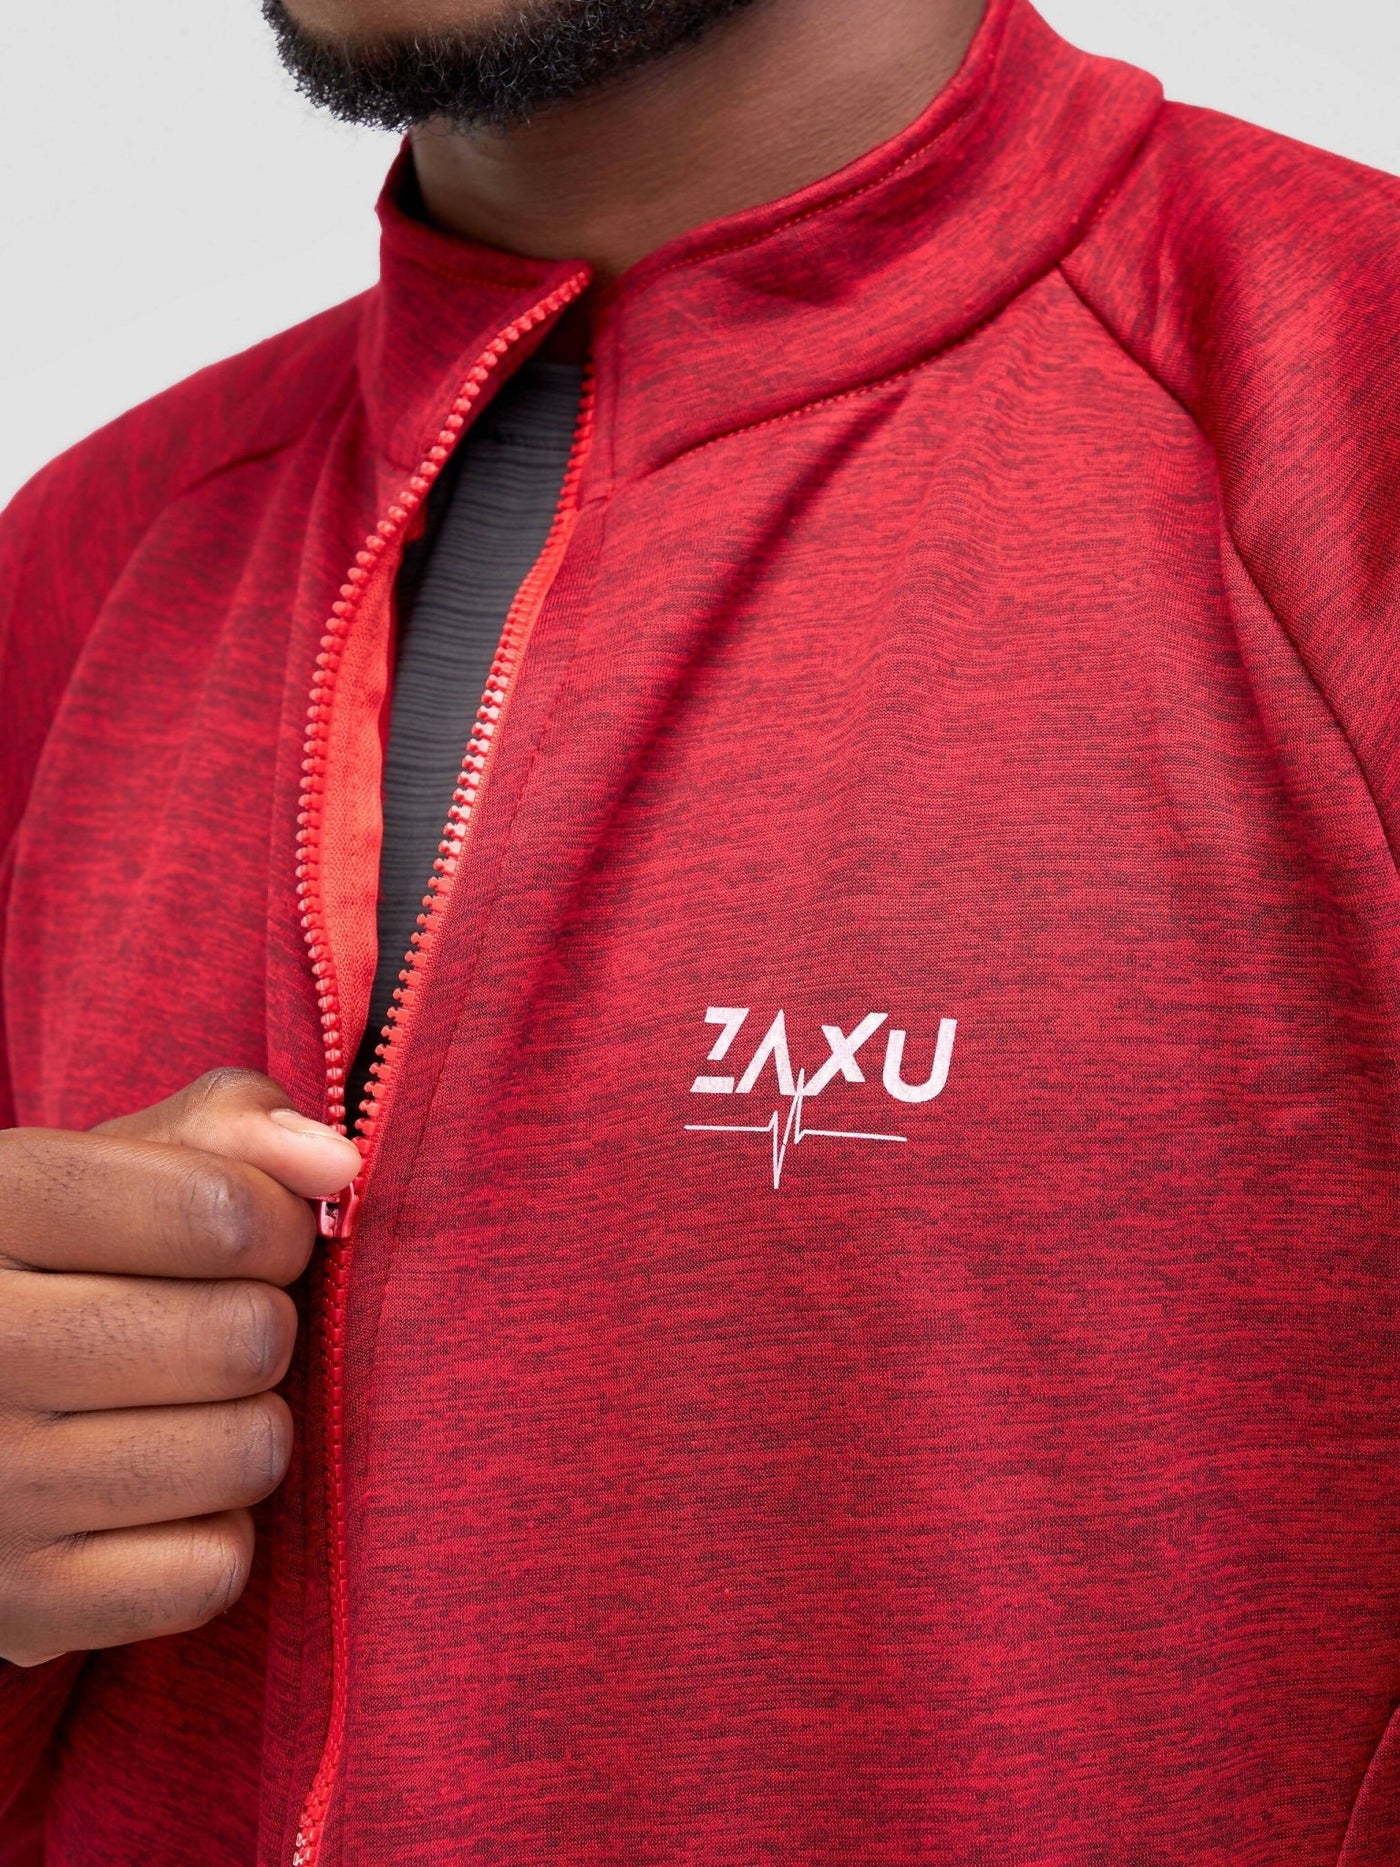 Zaxu Sports Epic Jacket - Red - Shopzetu